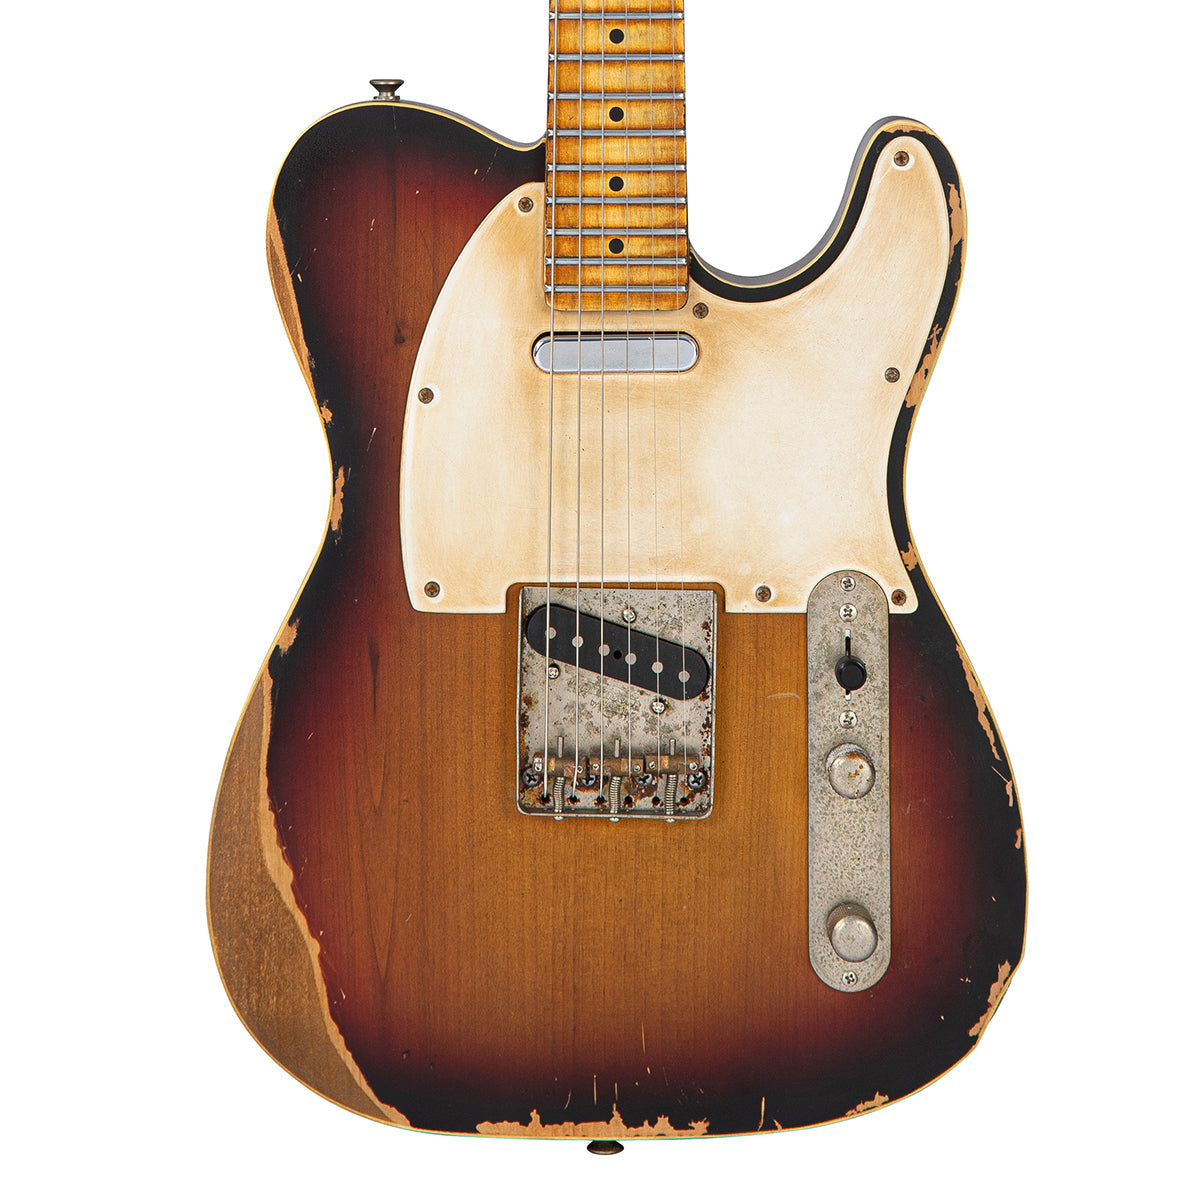 Vintage V59 ProShop LTD ~ Distressed Tobacco Sunburst (1 of 3), Electric Guitars for sale at Richards Guitars.